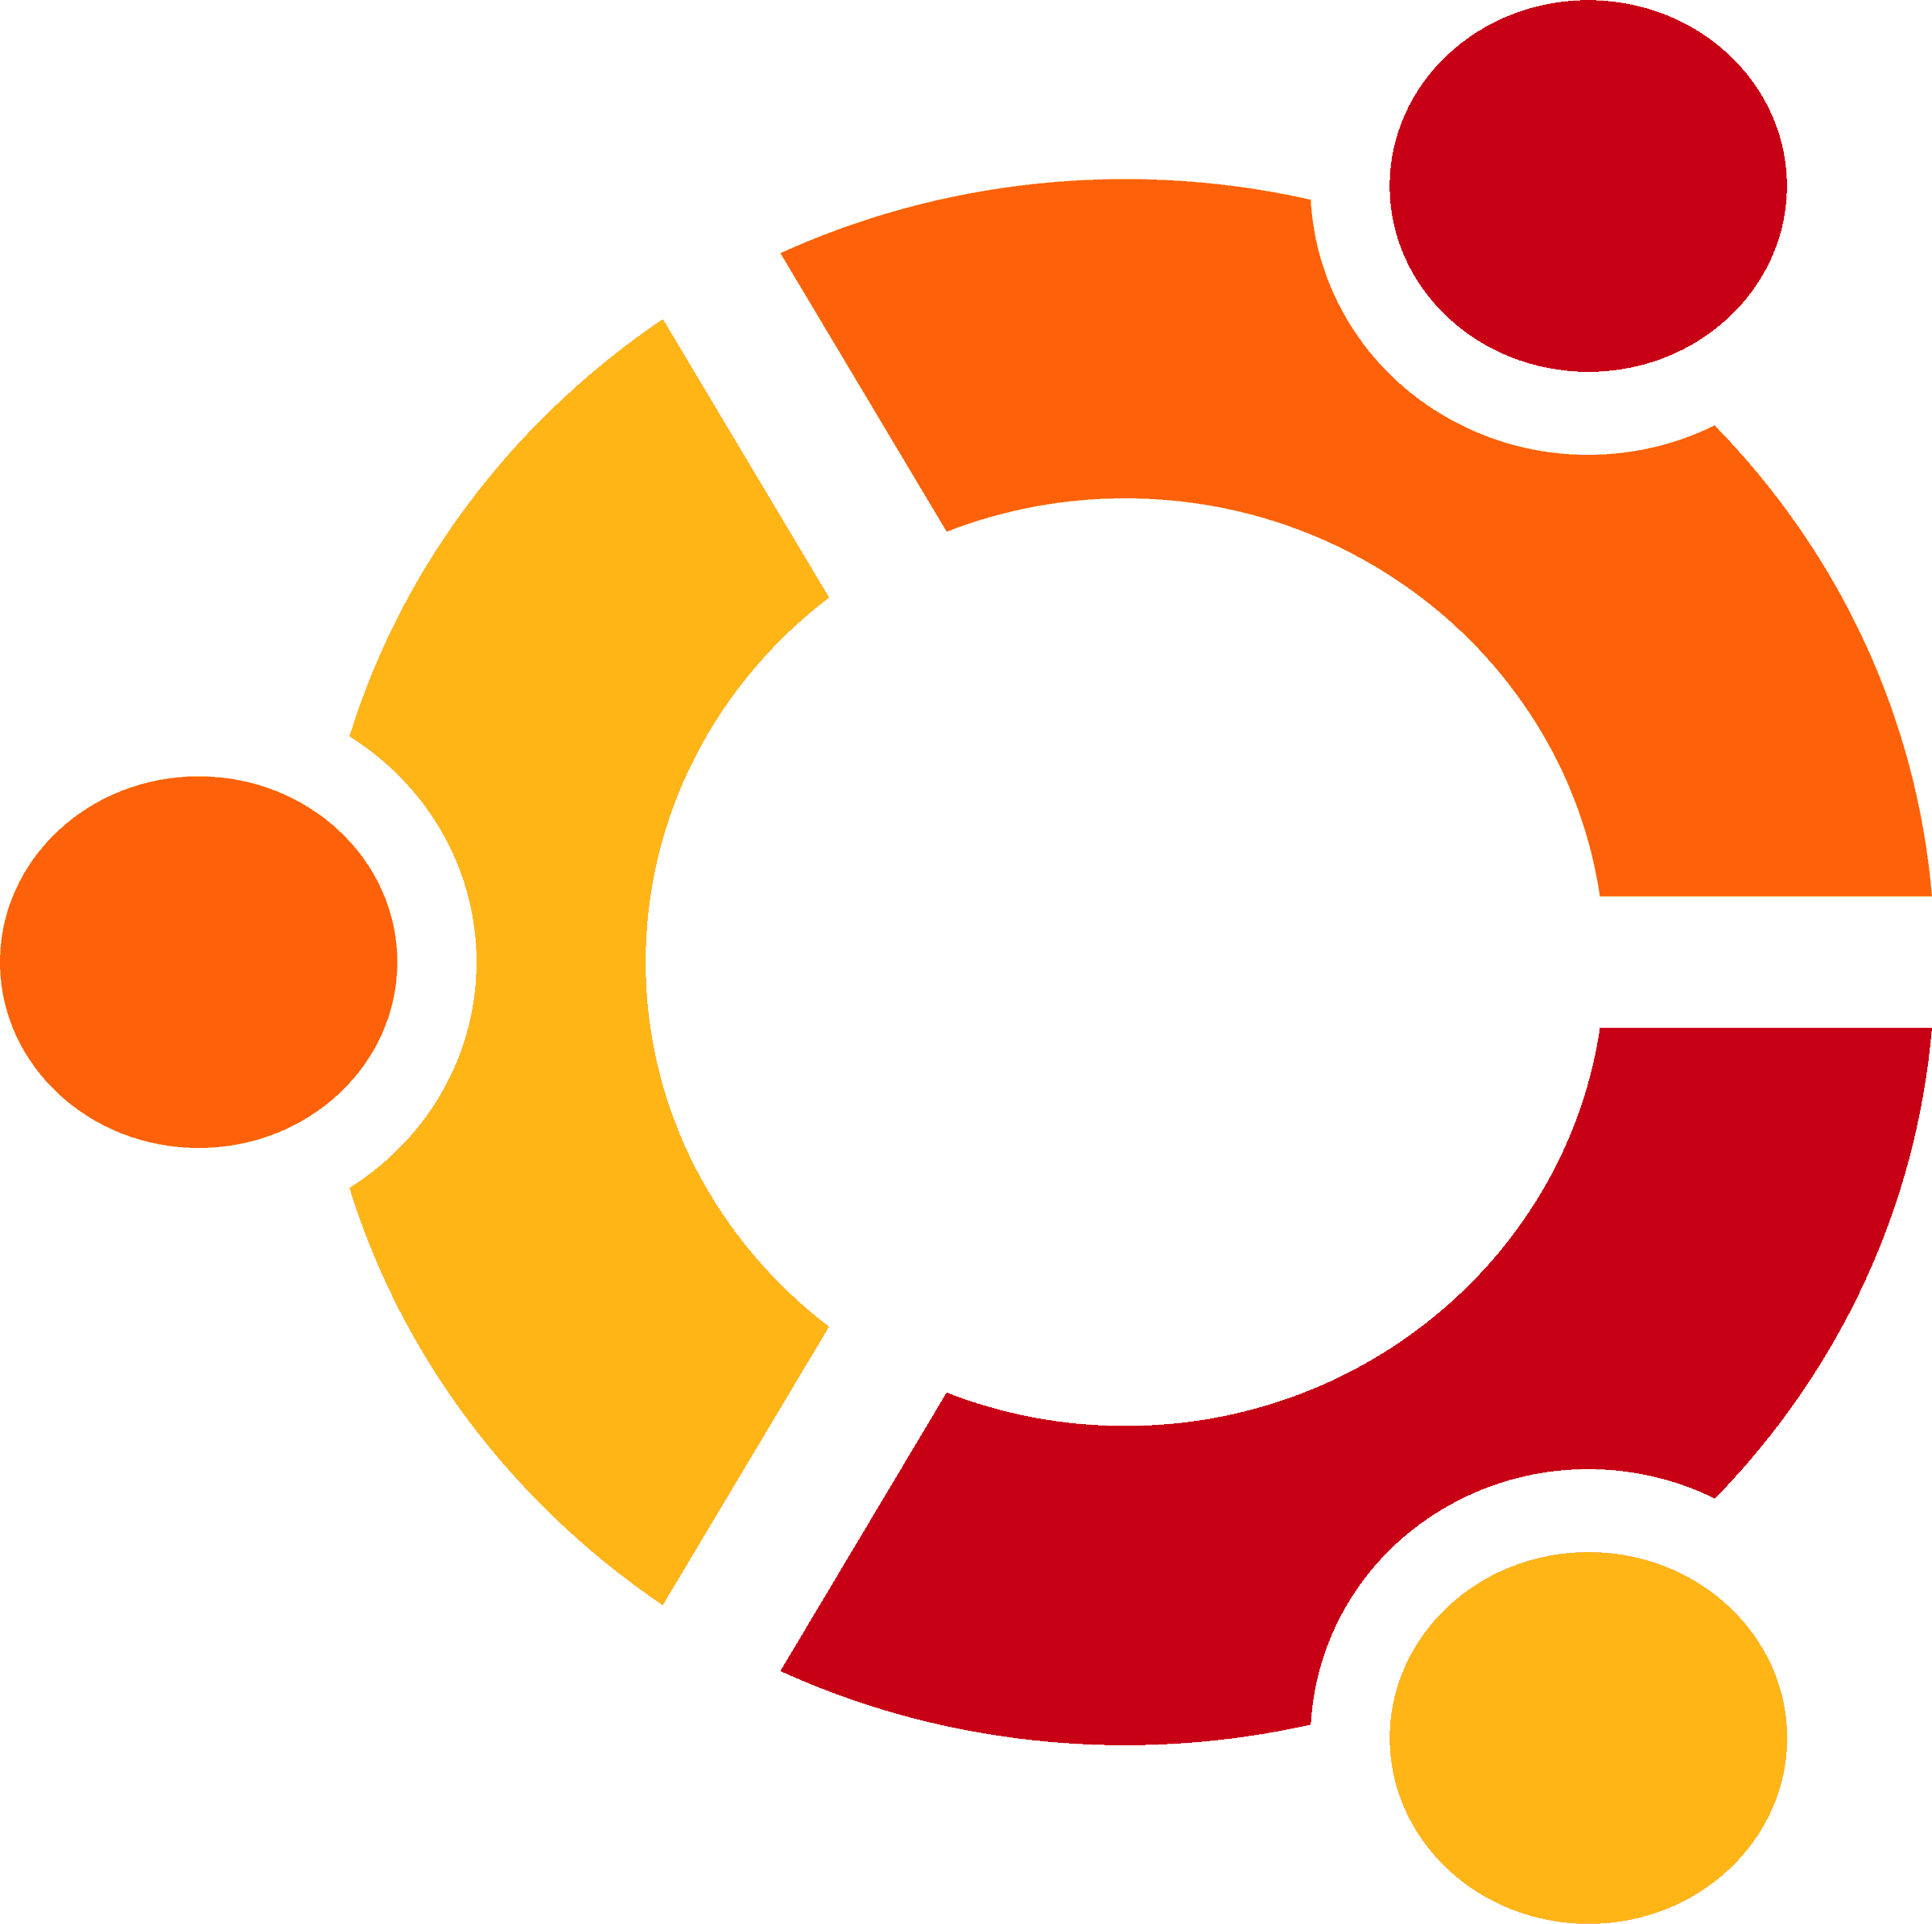 ch_ubuntu-22.04-lamp_pack1